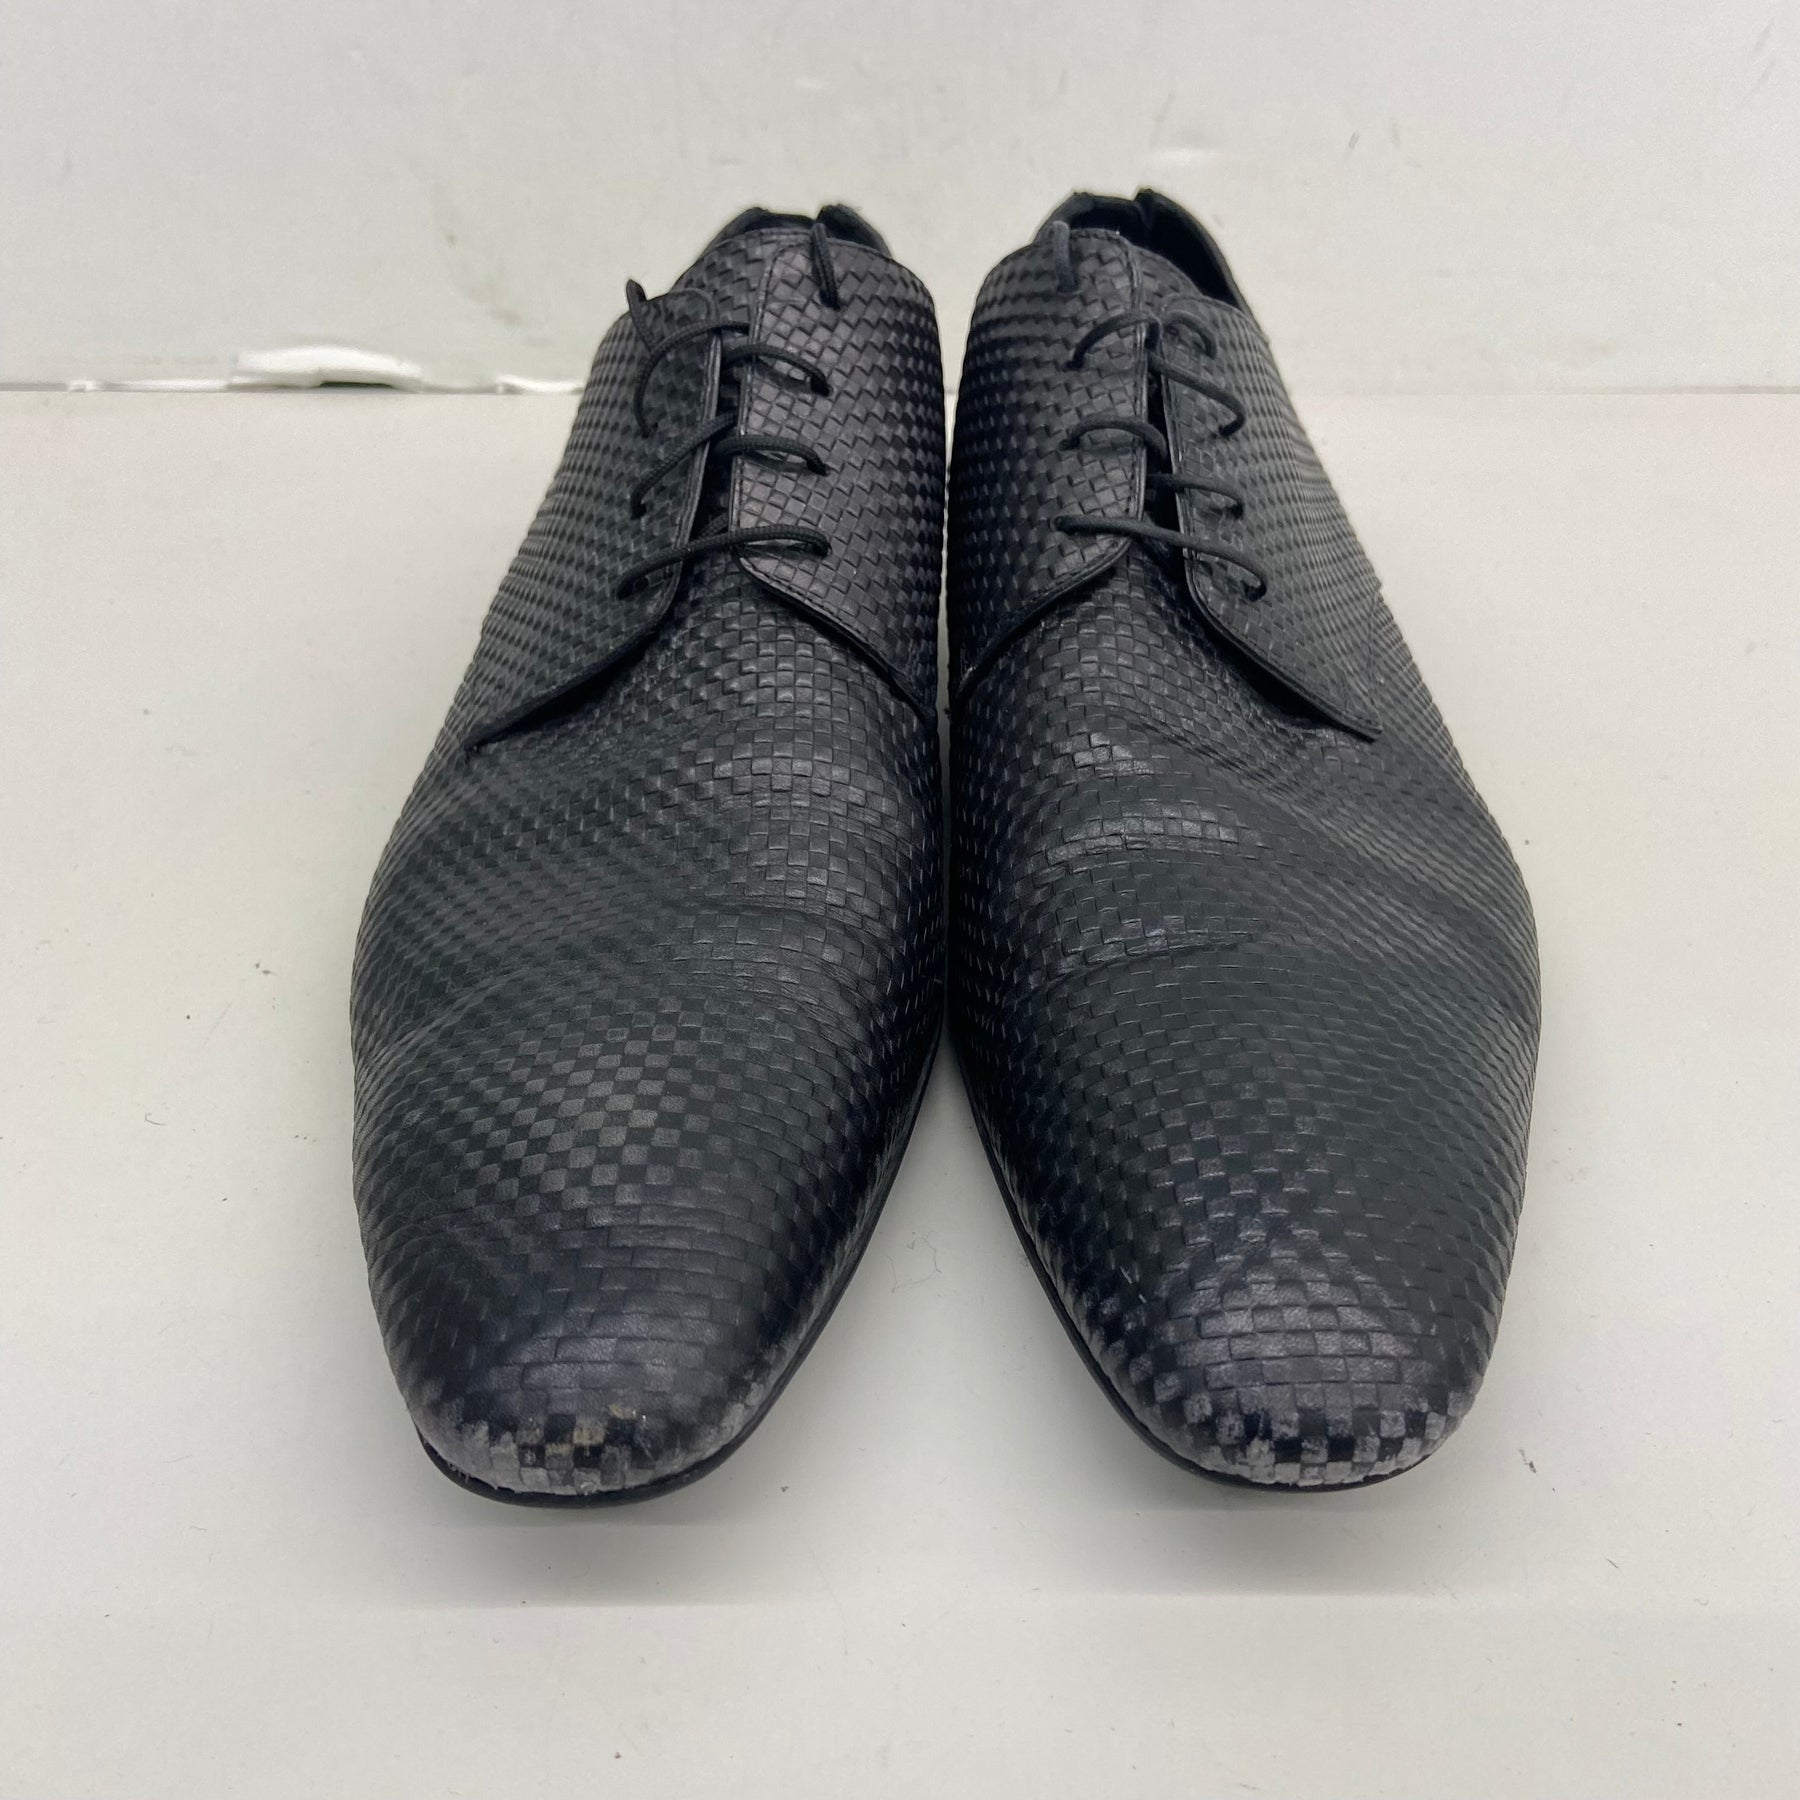 Louis Vuitton Black Dress Shoes for Men Size 10.5